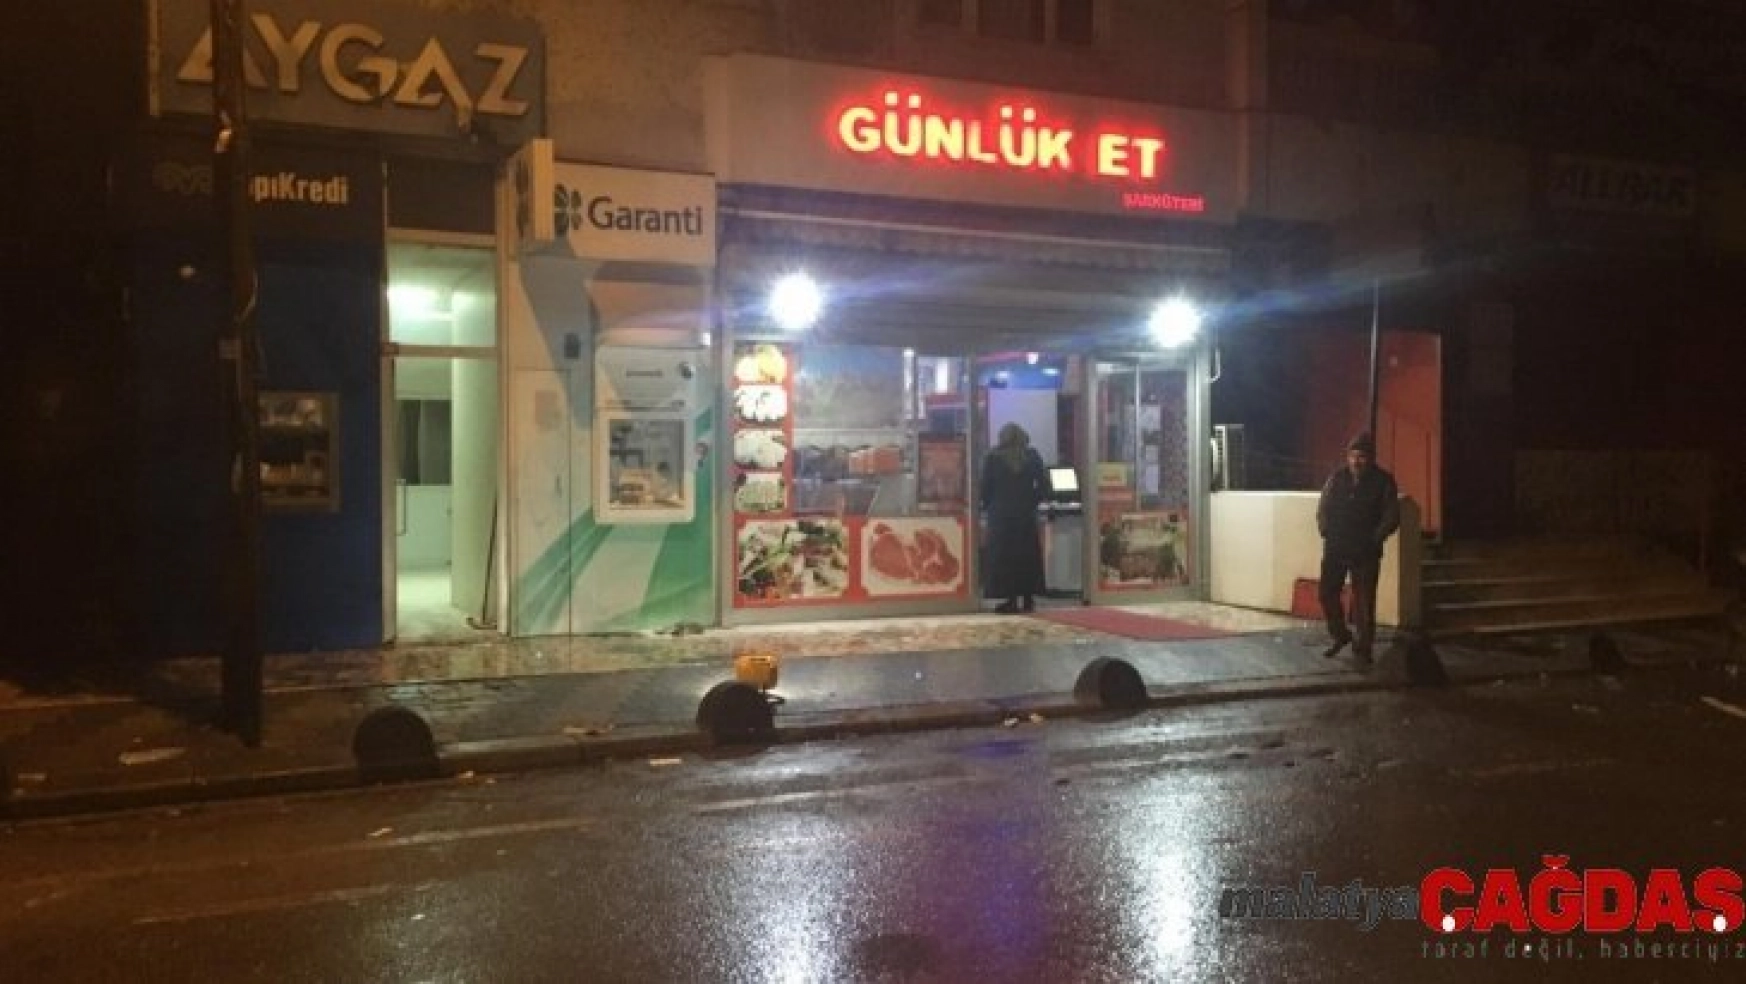 Sultanbeyli'de 3 ATM ateşe verildi